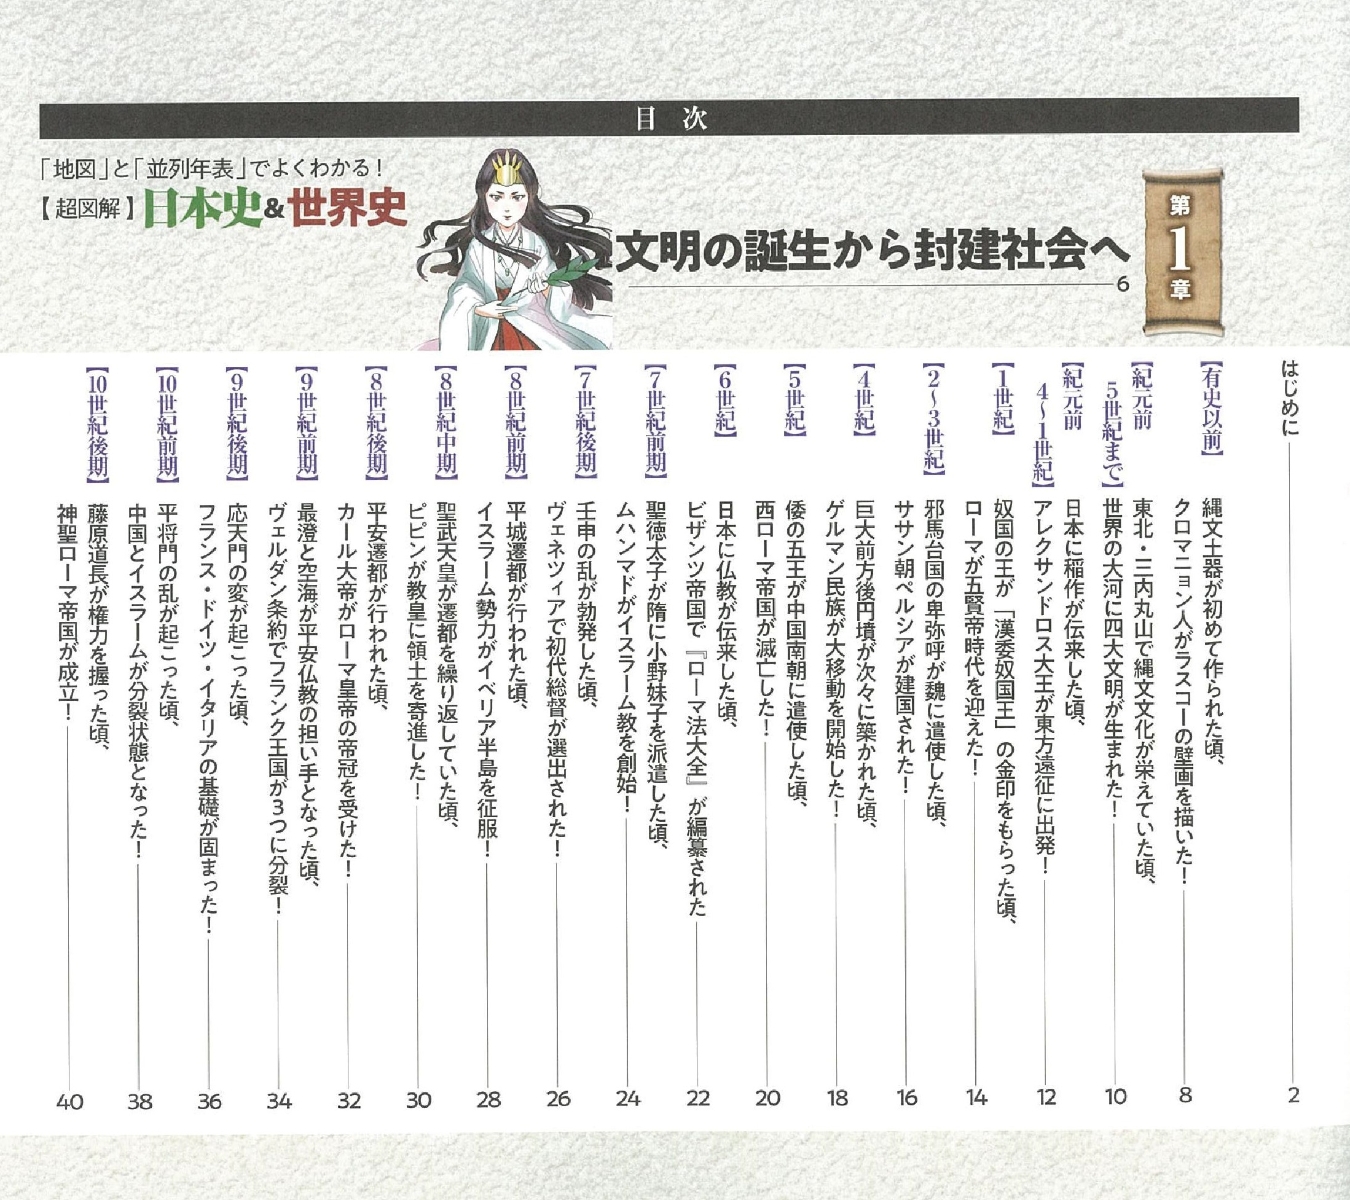 楽天ブックス 超図解 日本史 世界史 地図 と 並列年表 でよくわかる 祝田秀全 本